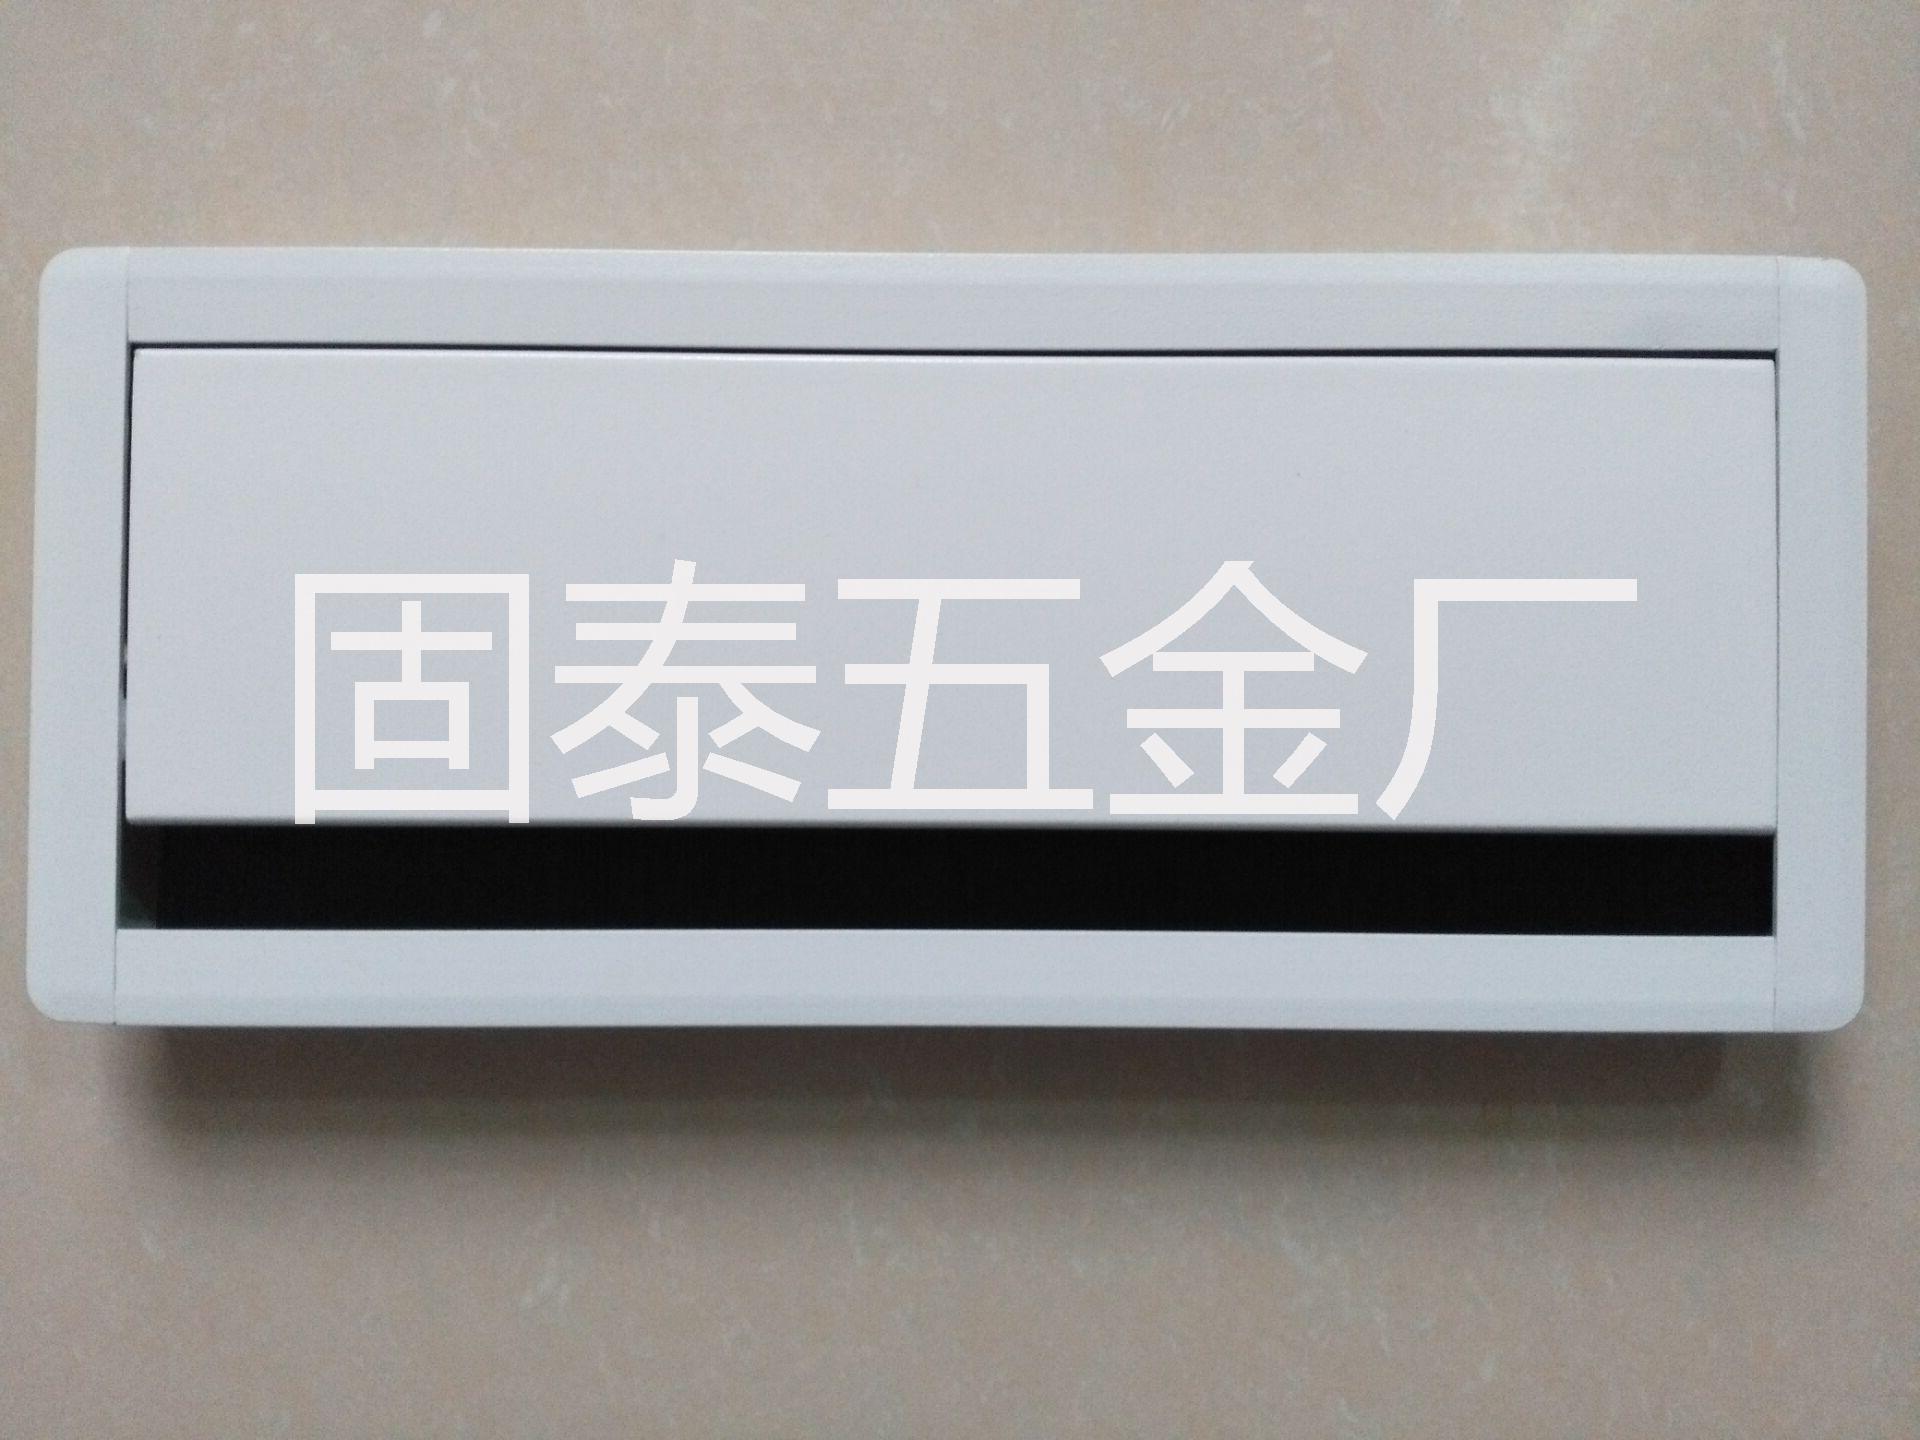 广东固泰GT-027 300mm 喷涂白色铝合金阻尼线盒 大班台缓冲线盒图片